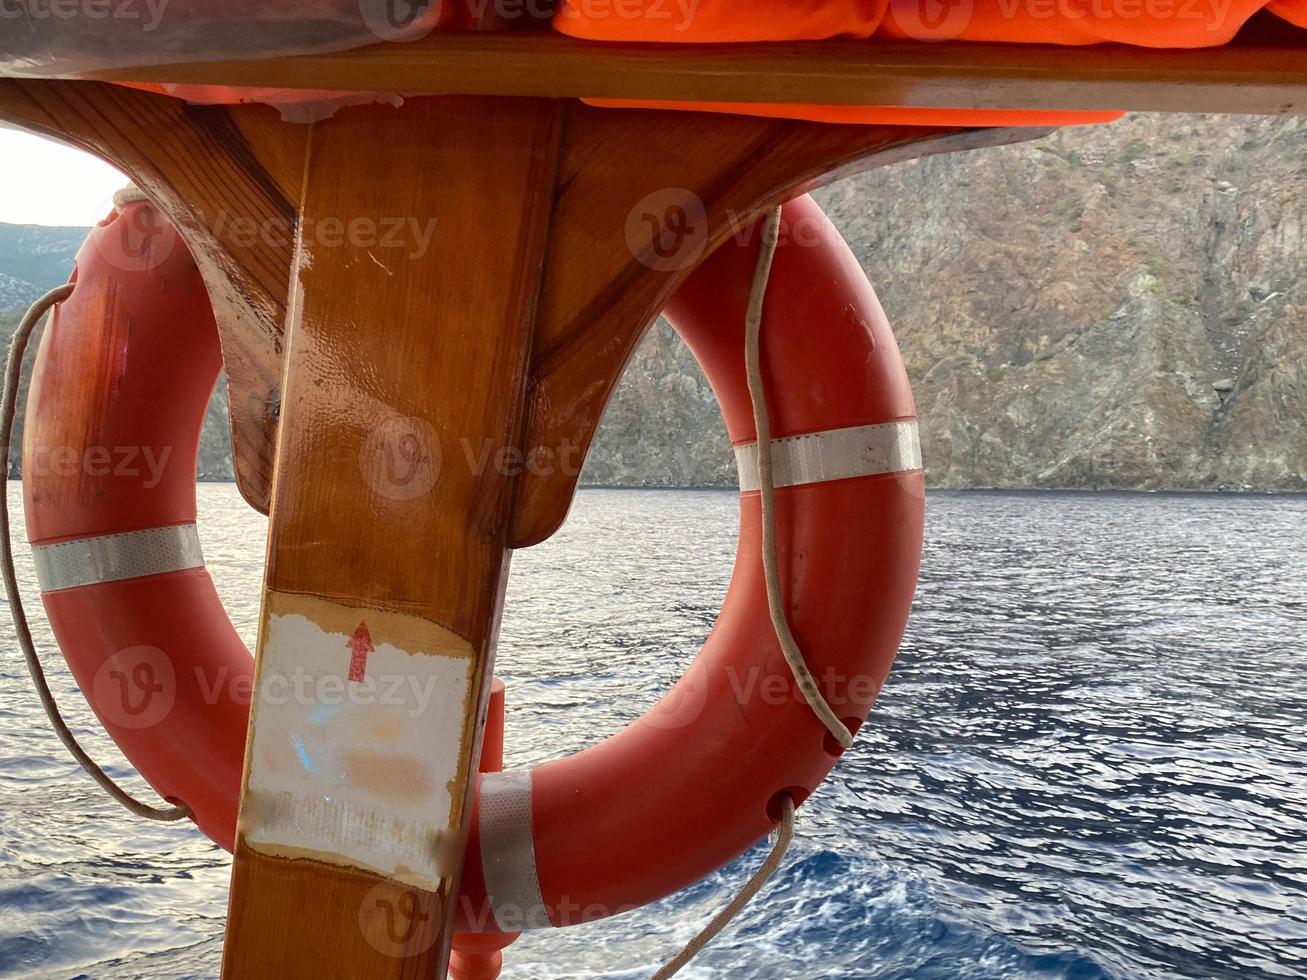 bóia salva-vidas vermelha em frente ao mar azul e ao navio branco foto